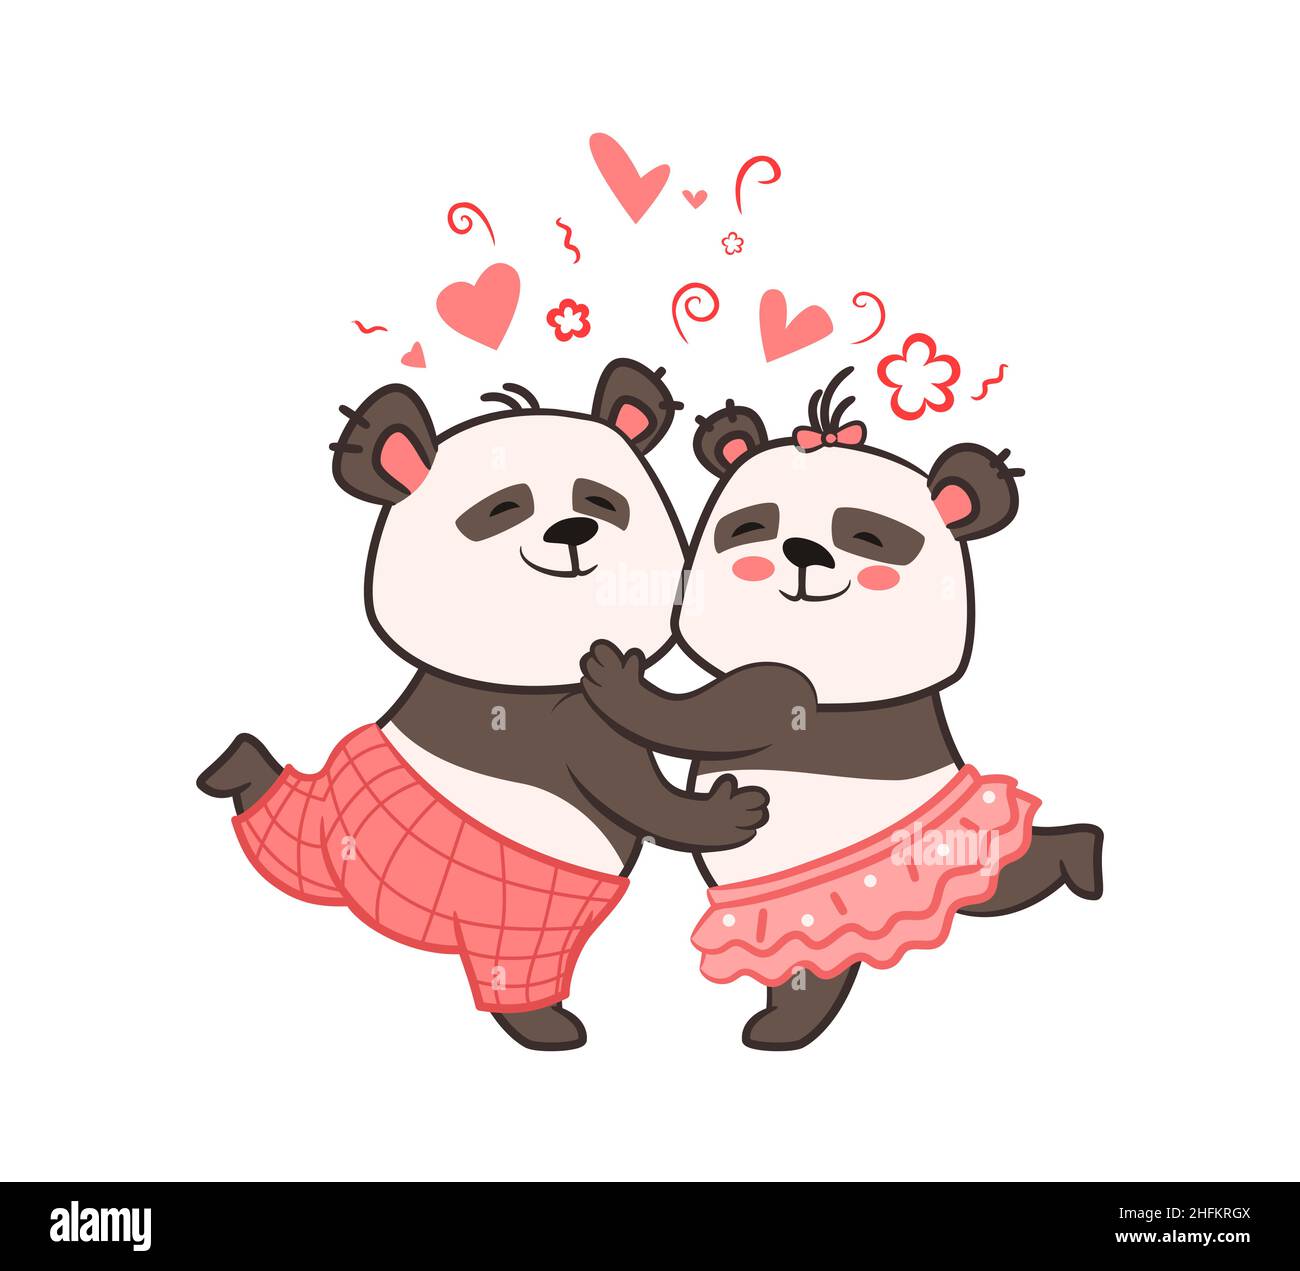 Zwei niedliche Pandas umarmten sich gegenseitig, gratuliert zum Valentinstag.Vektor-Illustration im Cartoon-Stil , kawaii Stock Vektor